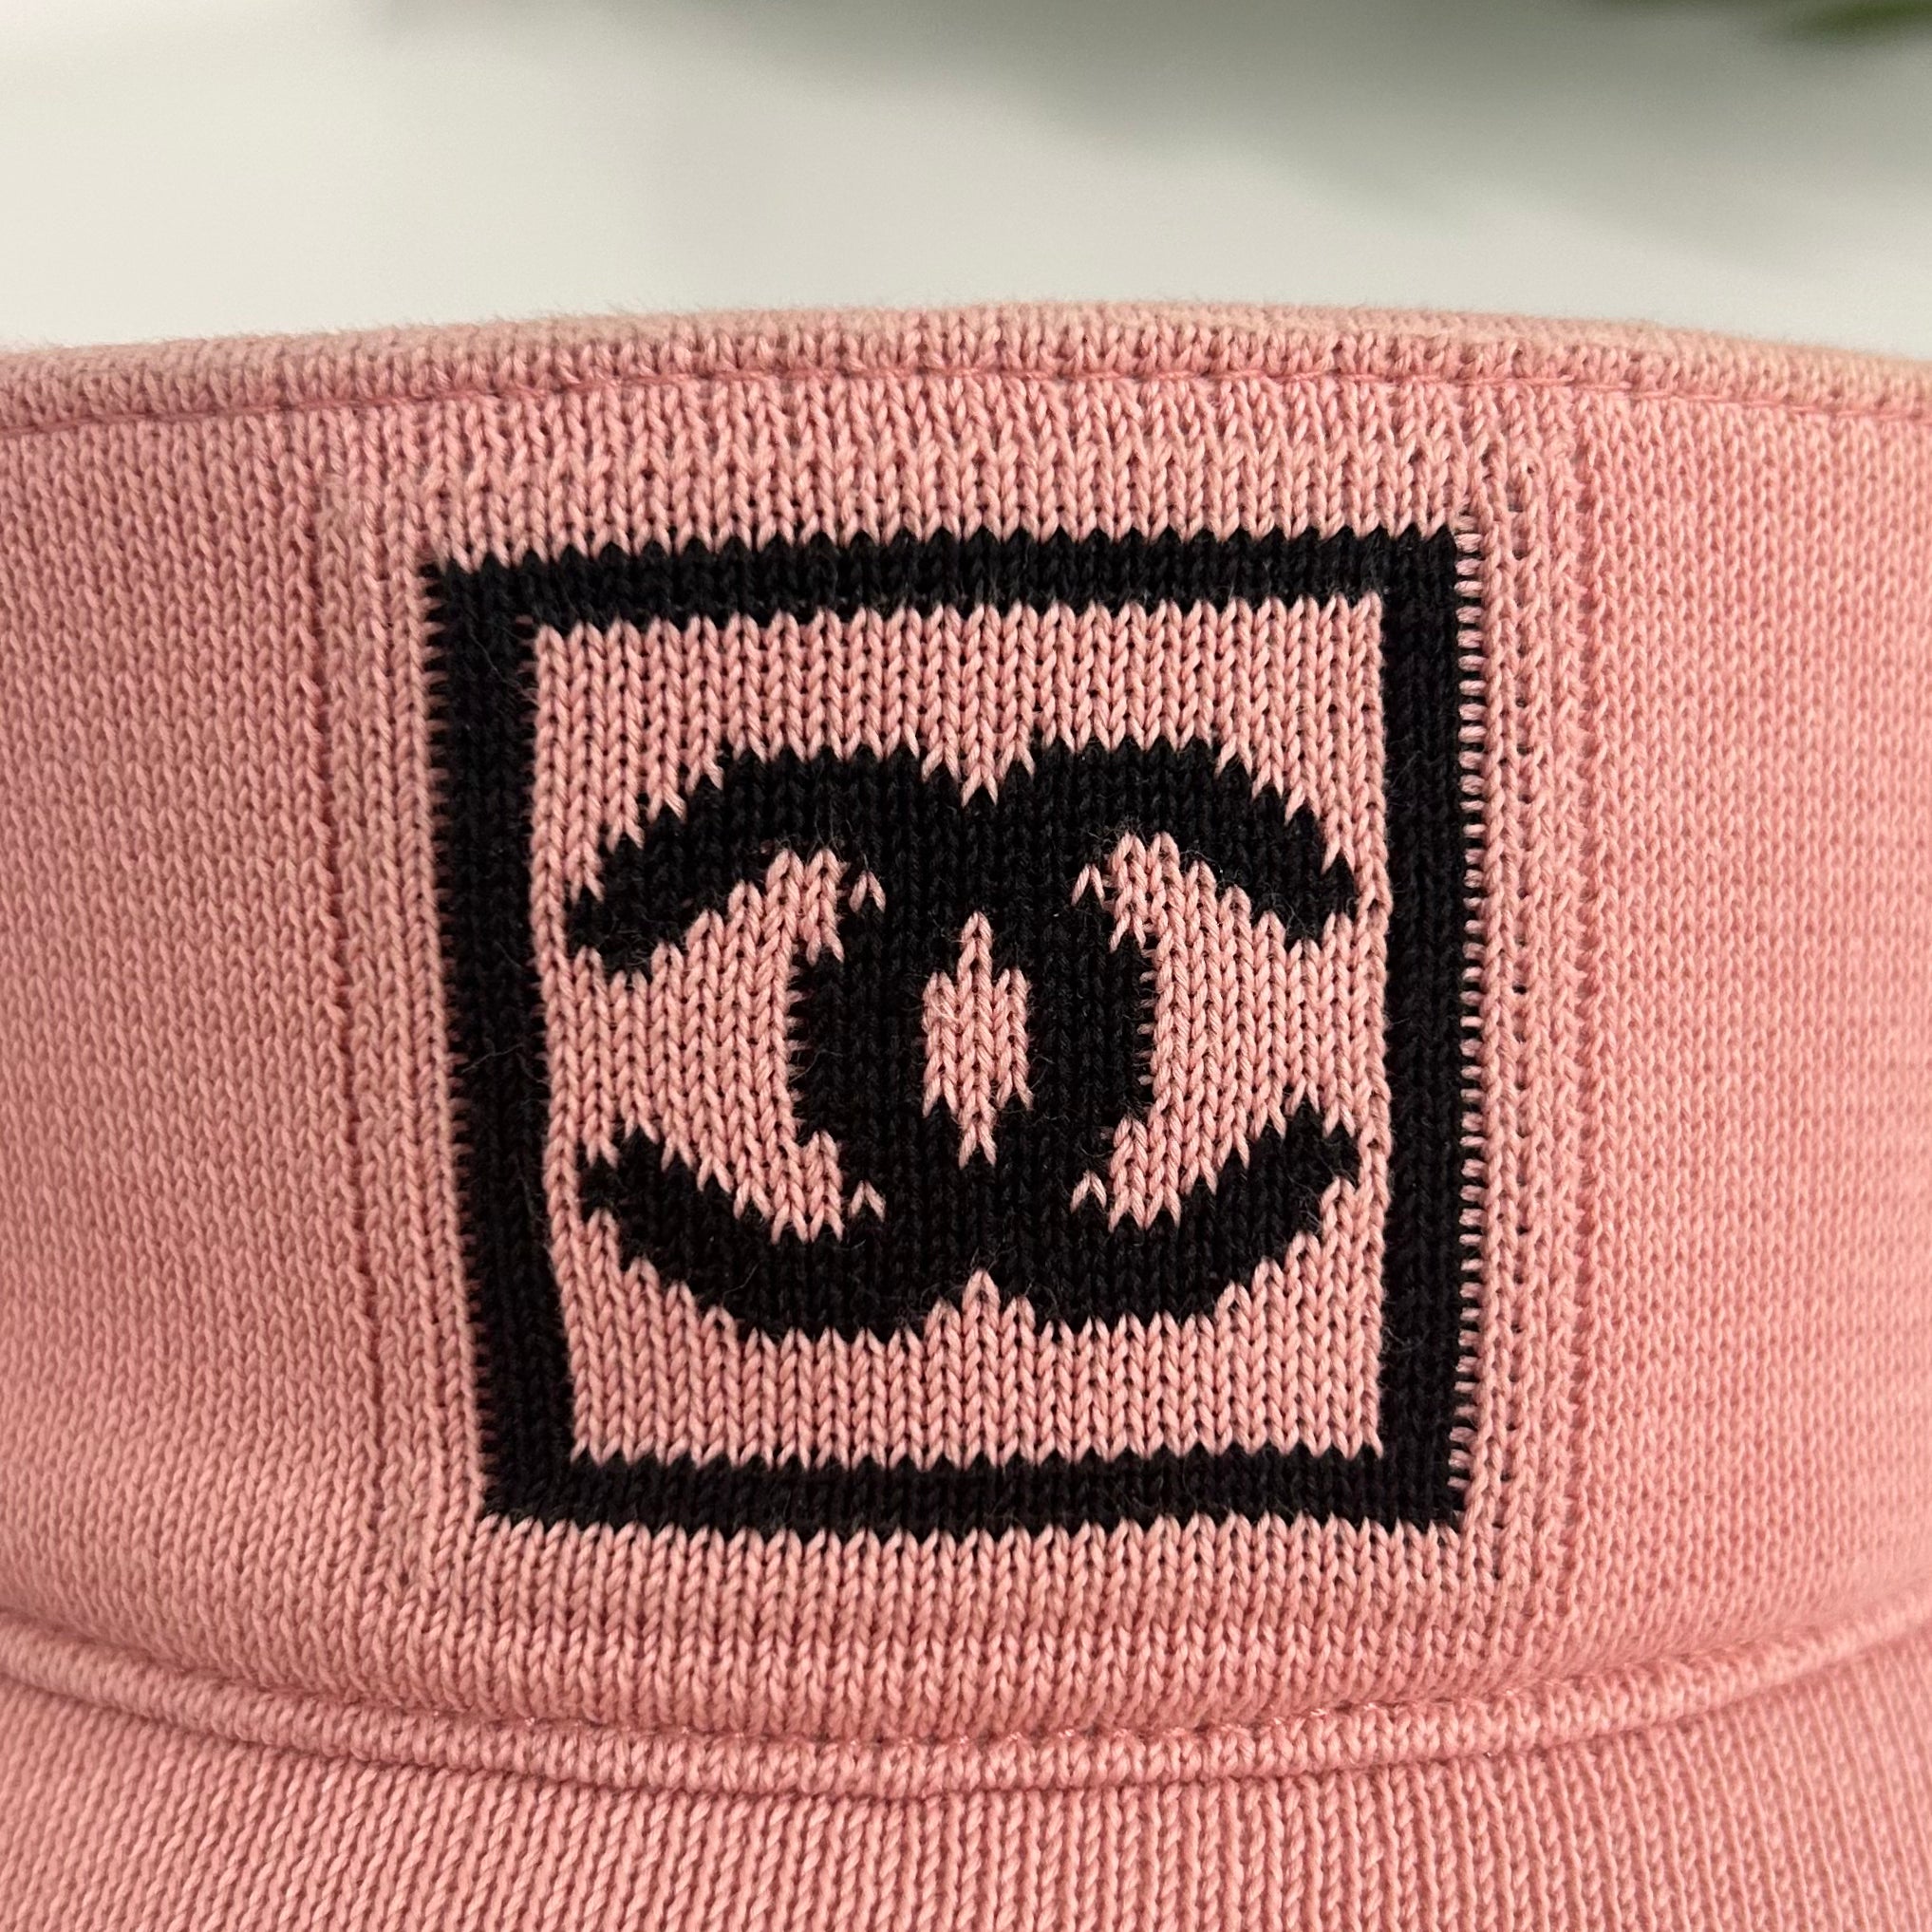 Chanel Vintage Pink Visor